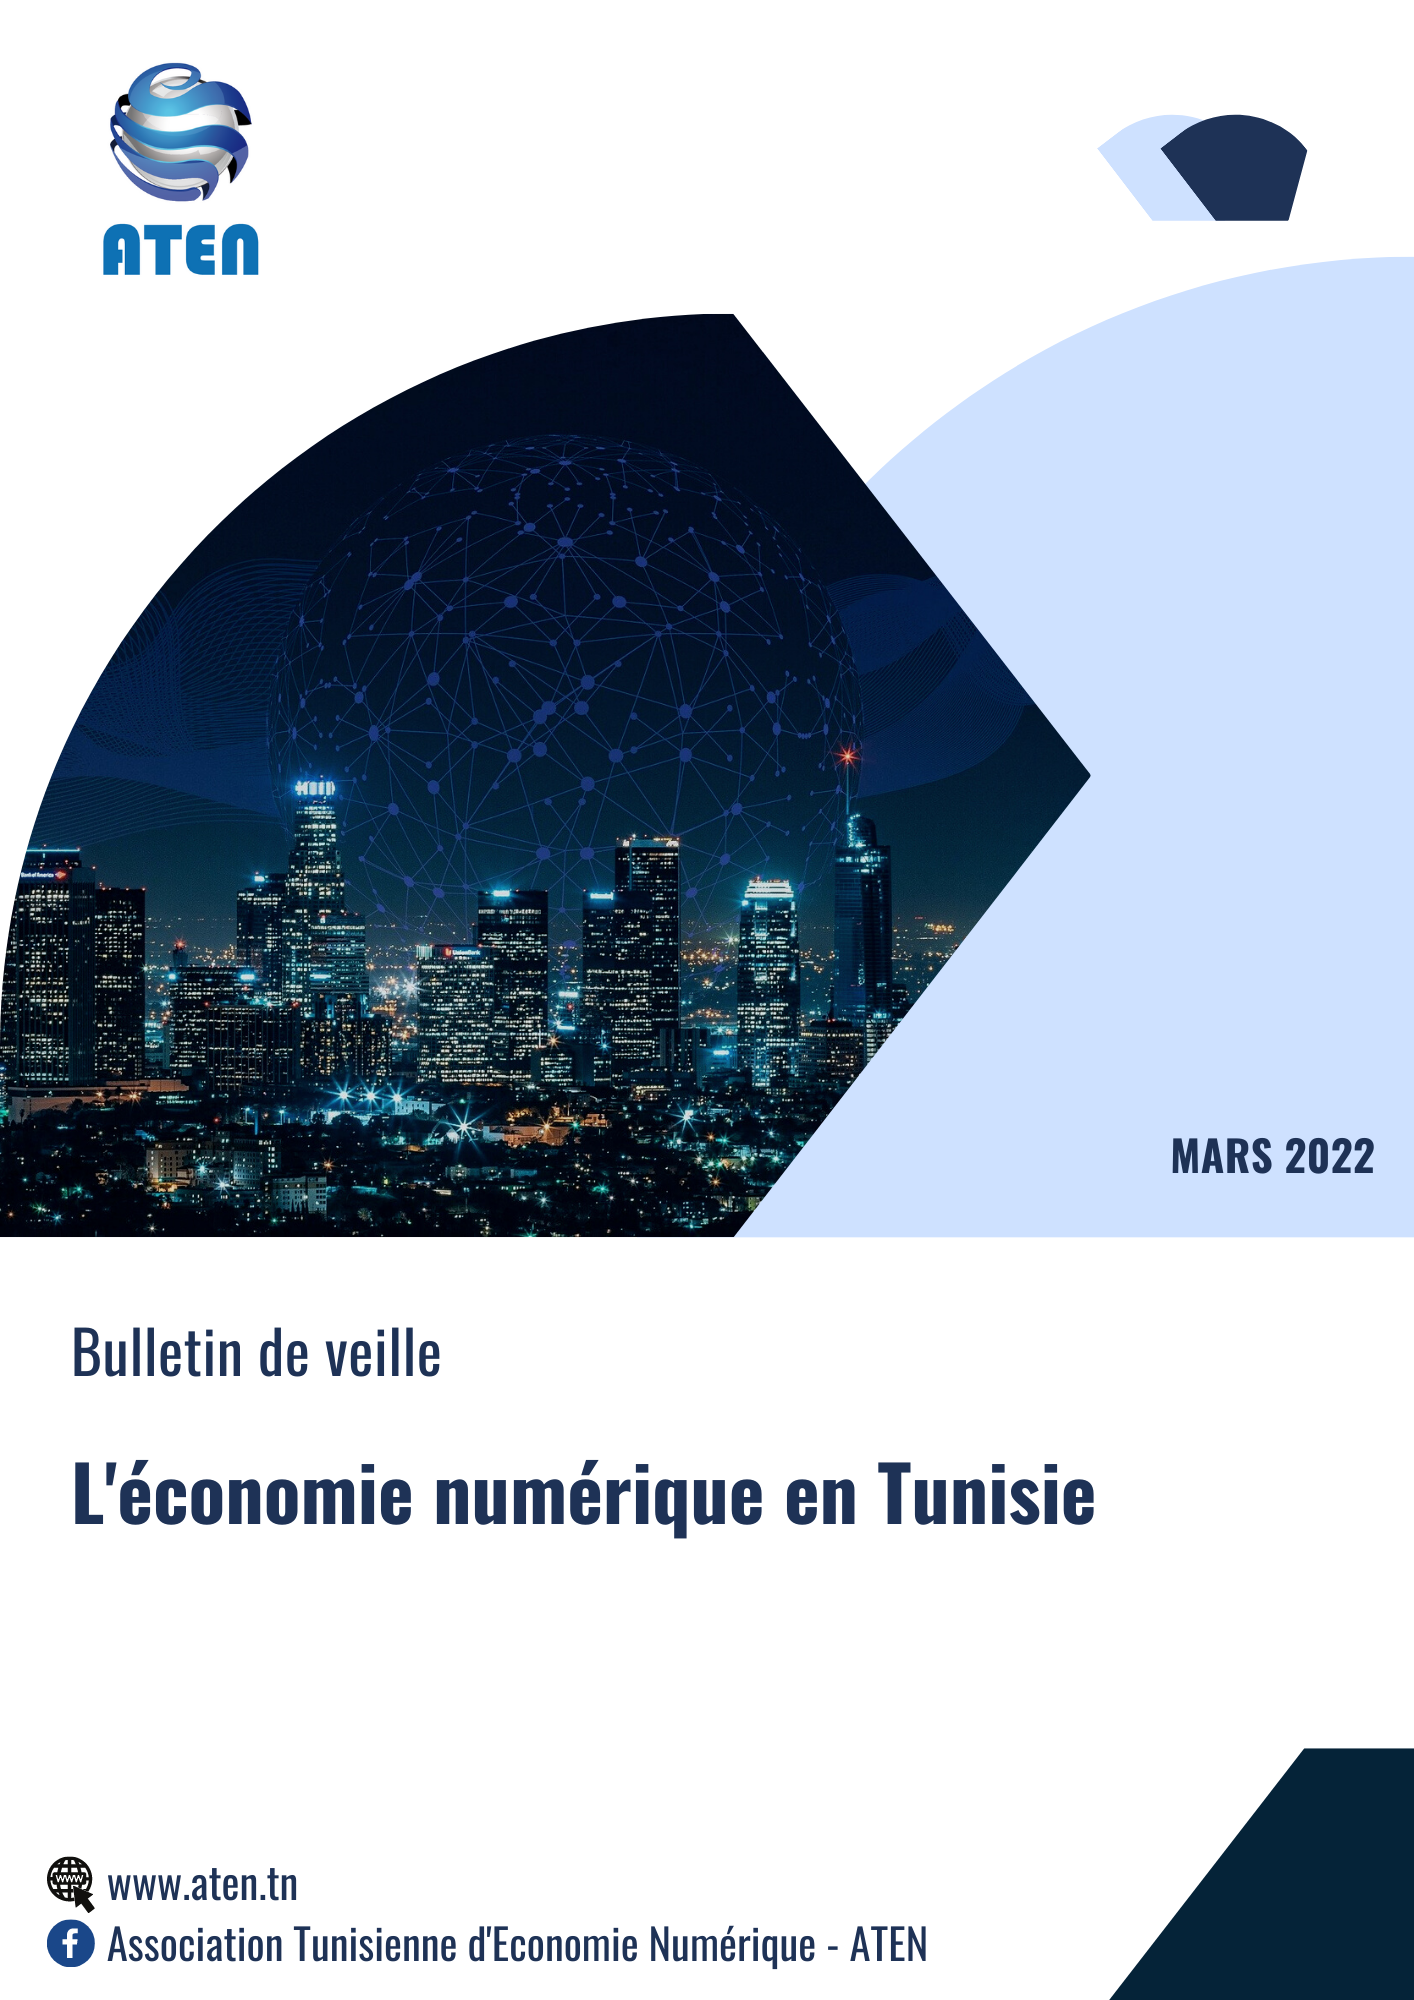 Bulletin de veille N°1 (L'économie numérique en Tunisie)